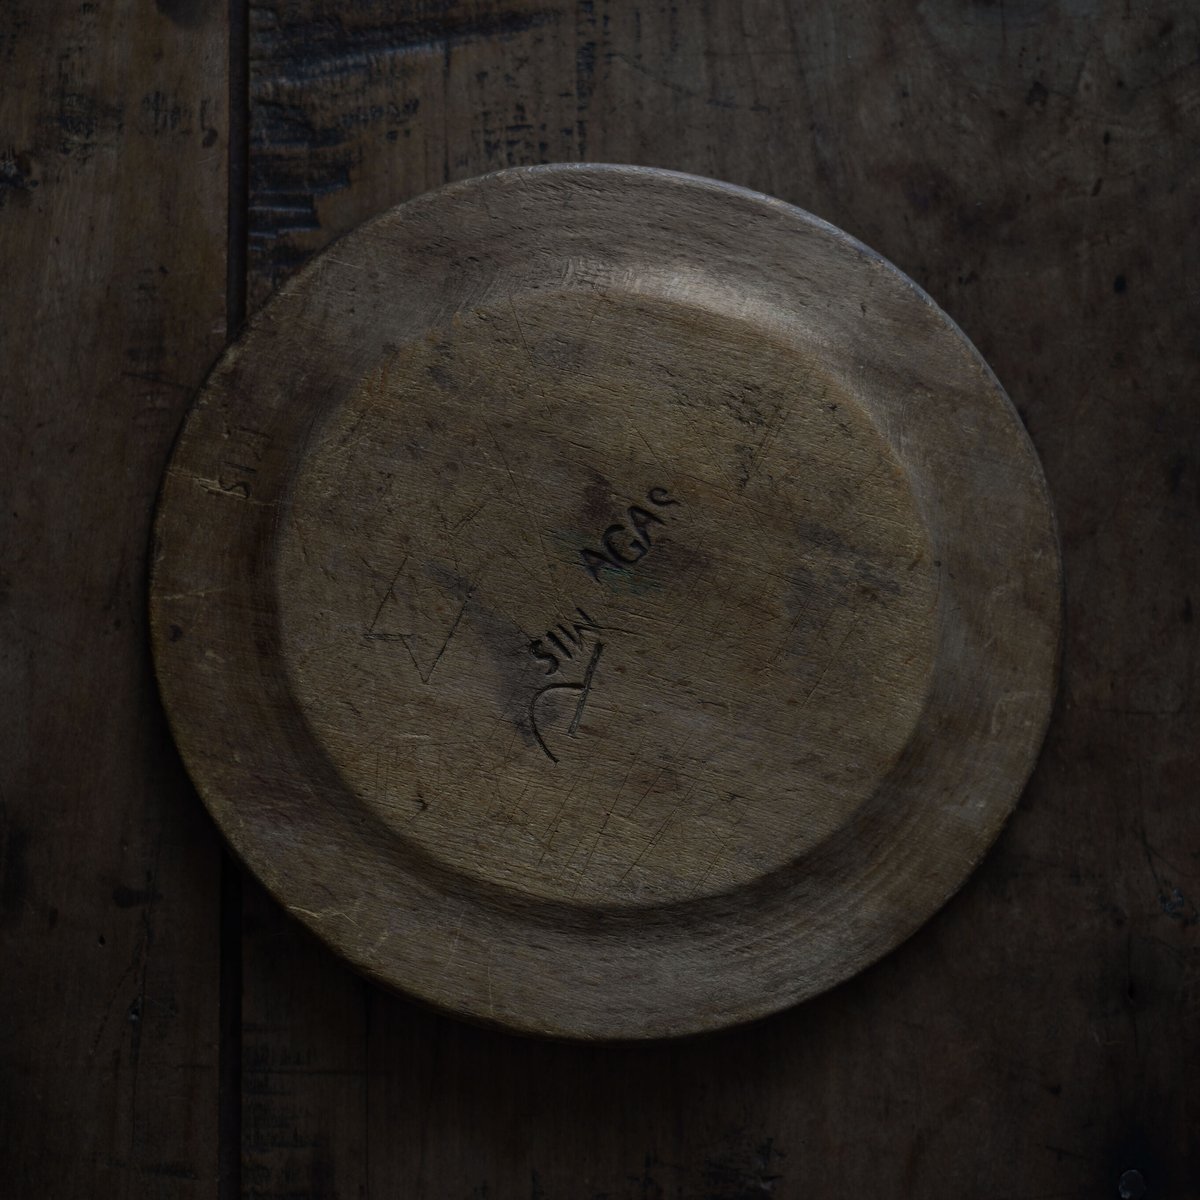 18世紀 スウェーデン木皿 / Swedish Wooden Rim Plate / Sweden 18th C. / b